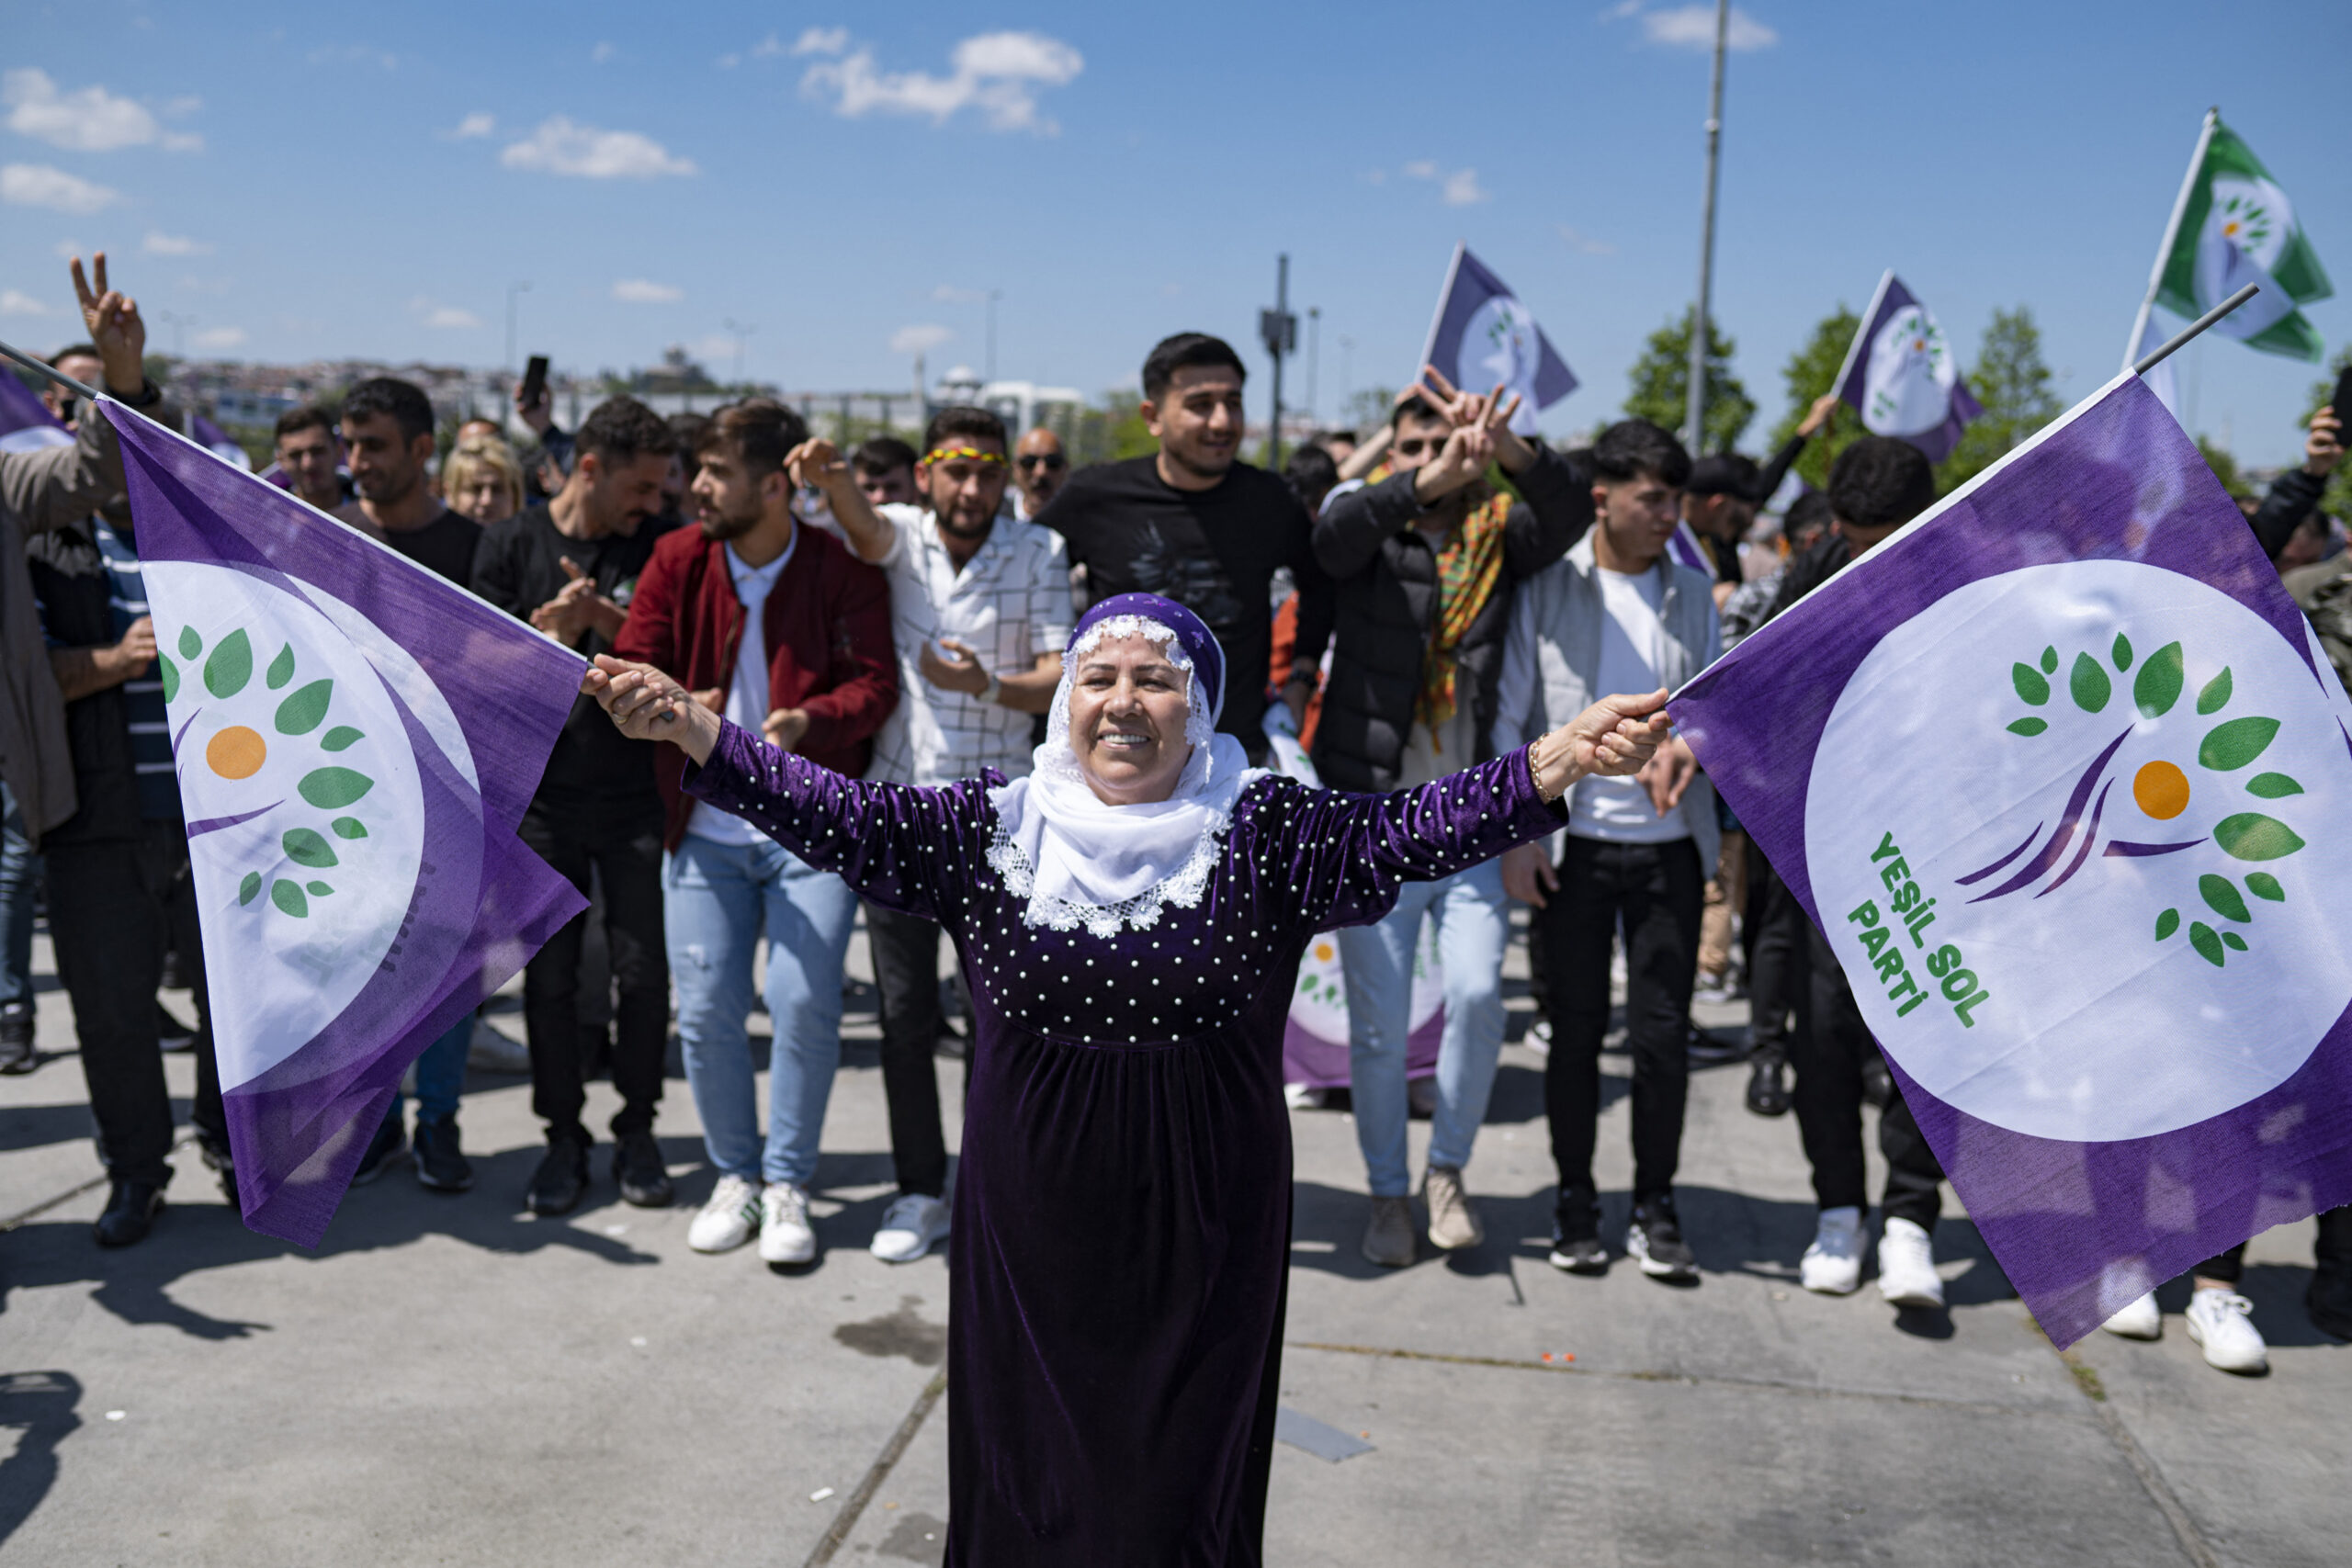 Άνοιξαν οι κάλπες στην Toυρκία για τις προεδρικές και βουλευτικές εκλογές